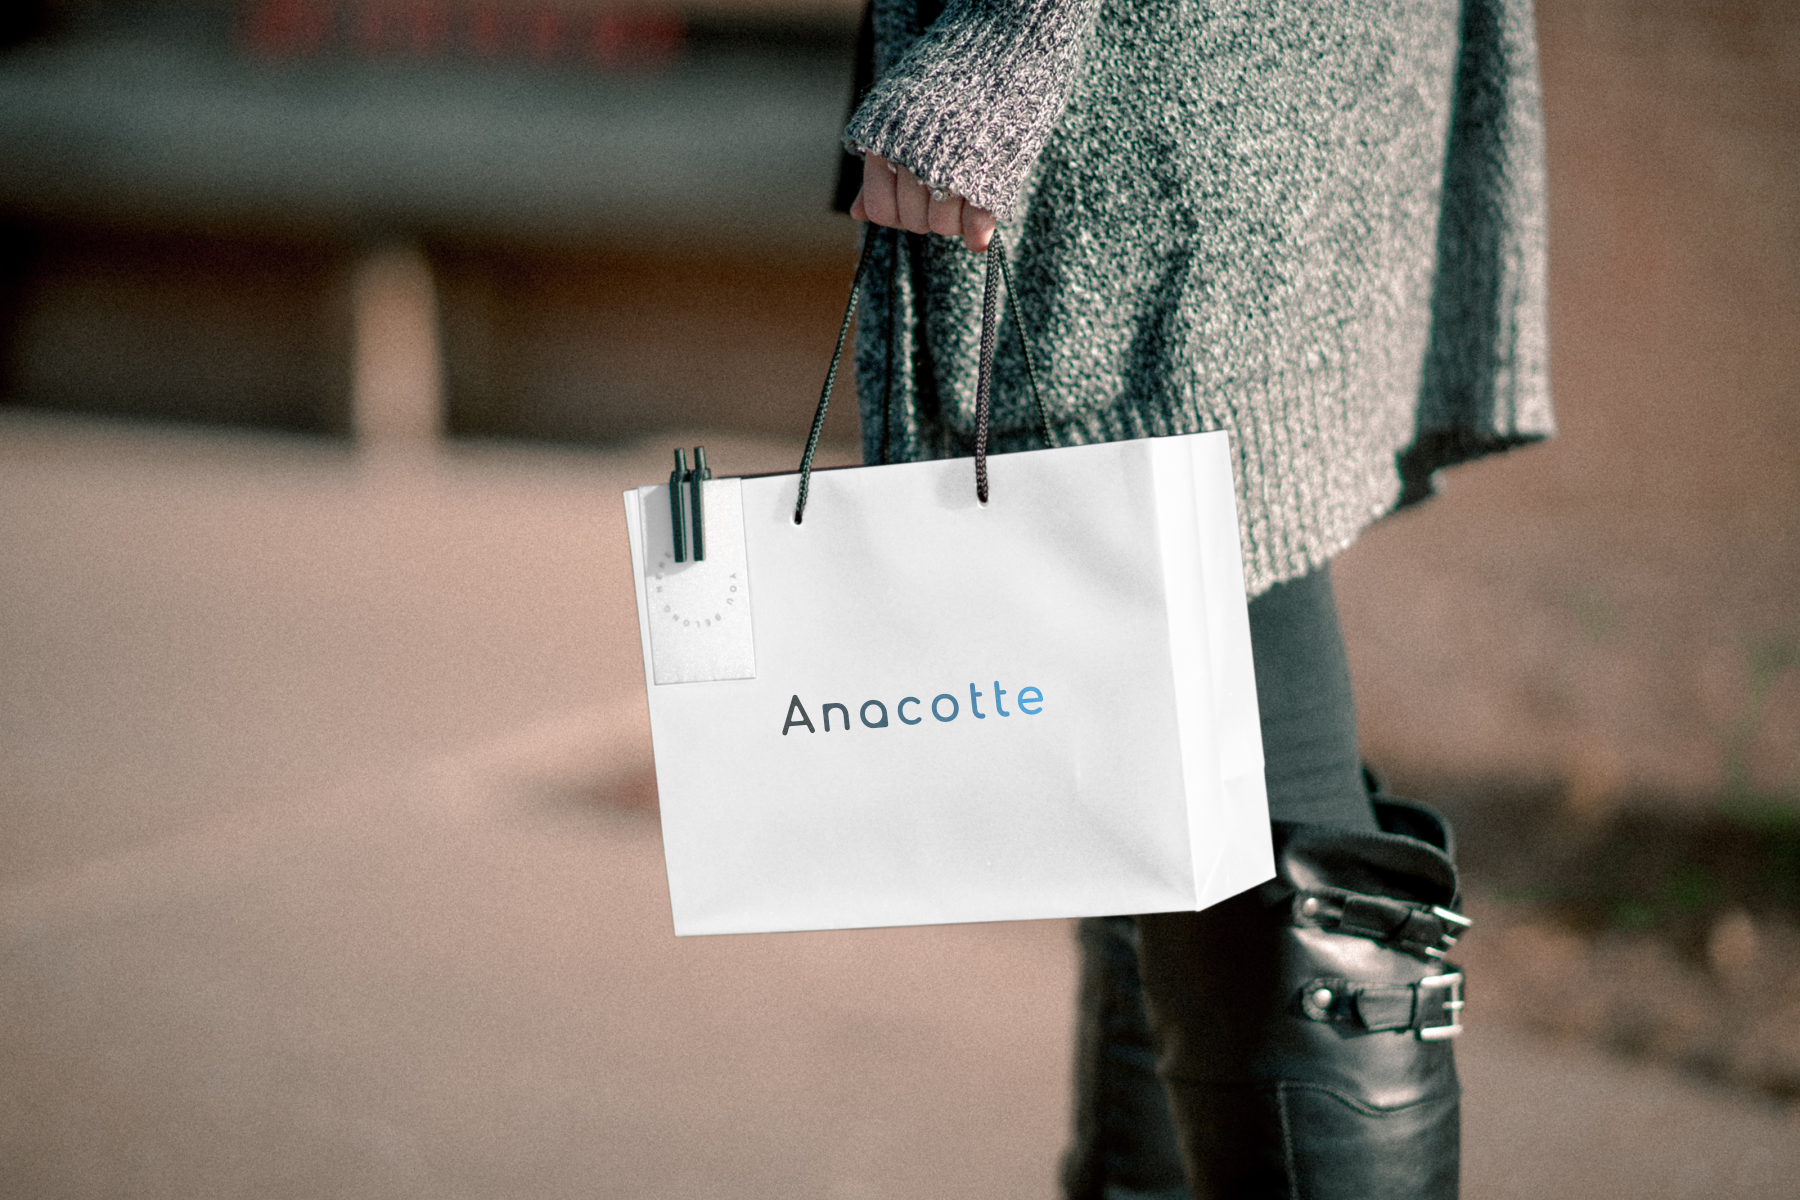 Explore Anacotte the brand